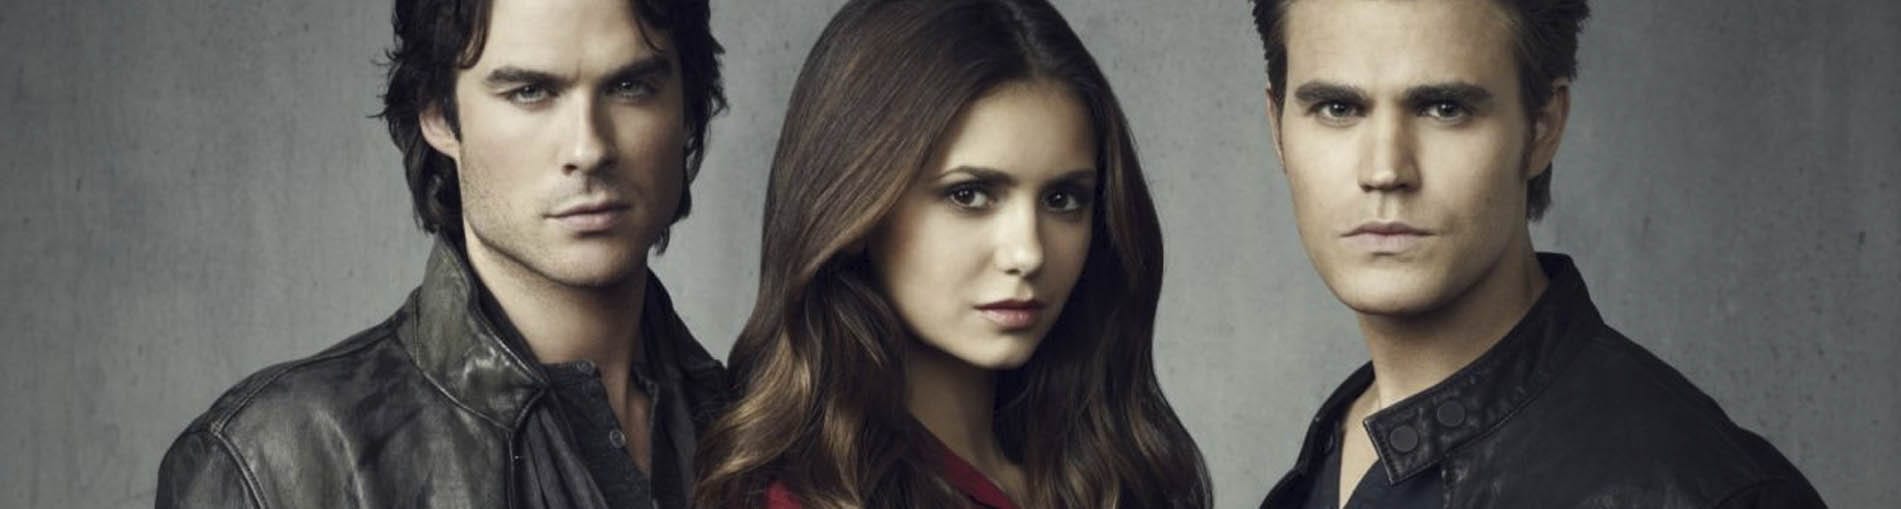 Frases de Crónicas Vampíricas. Damon, Stefan y Elena